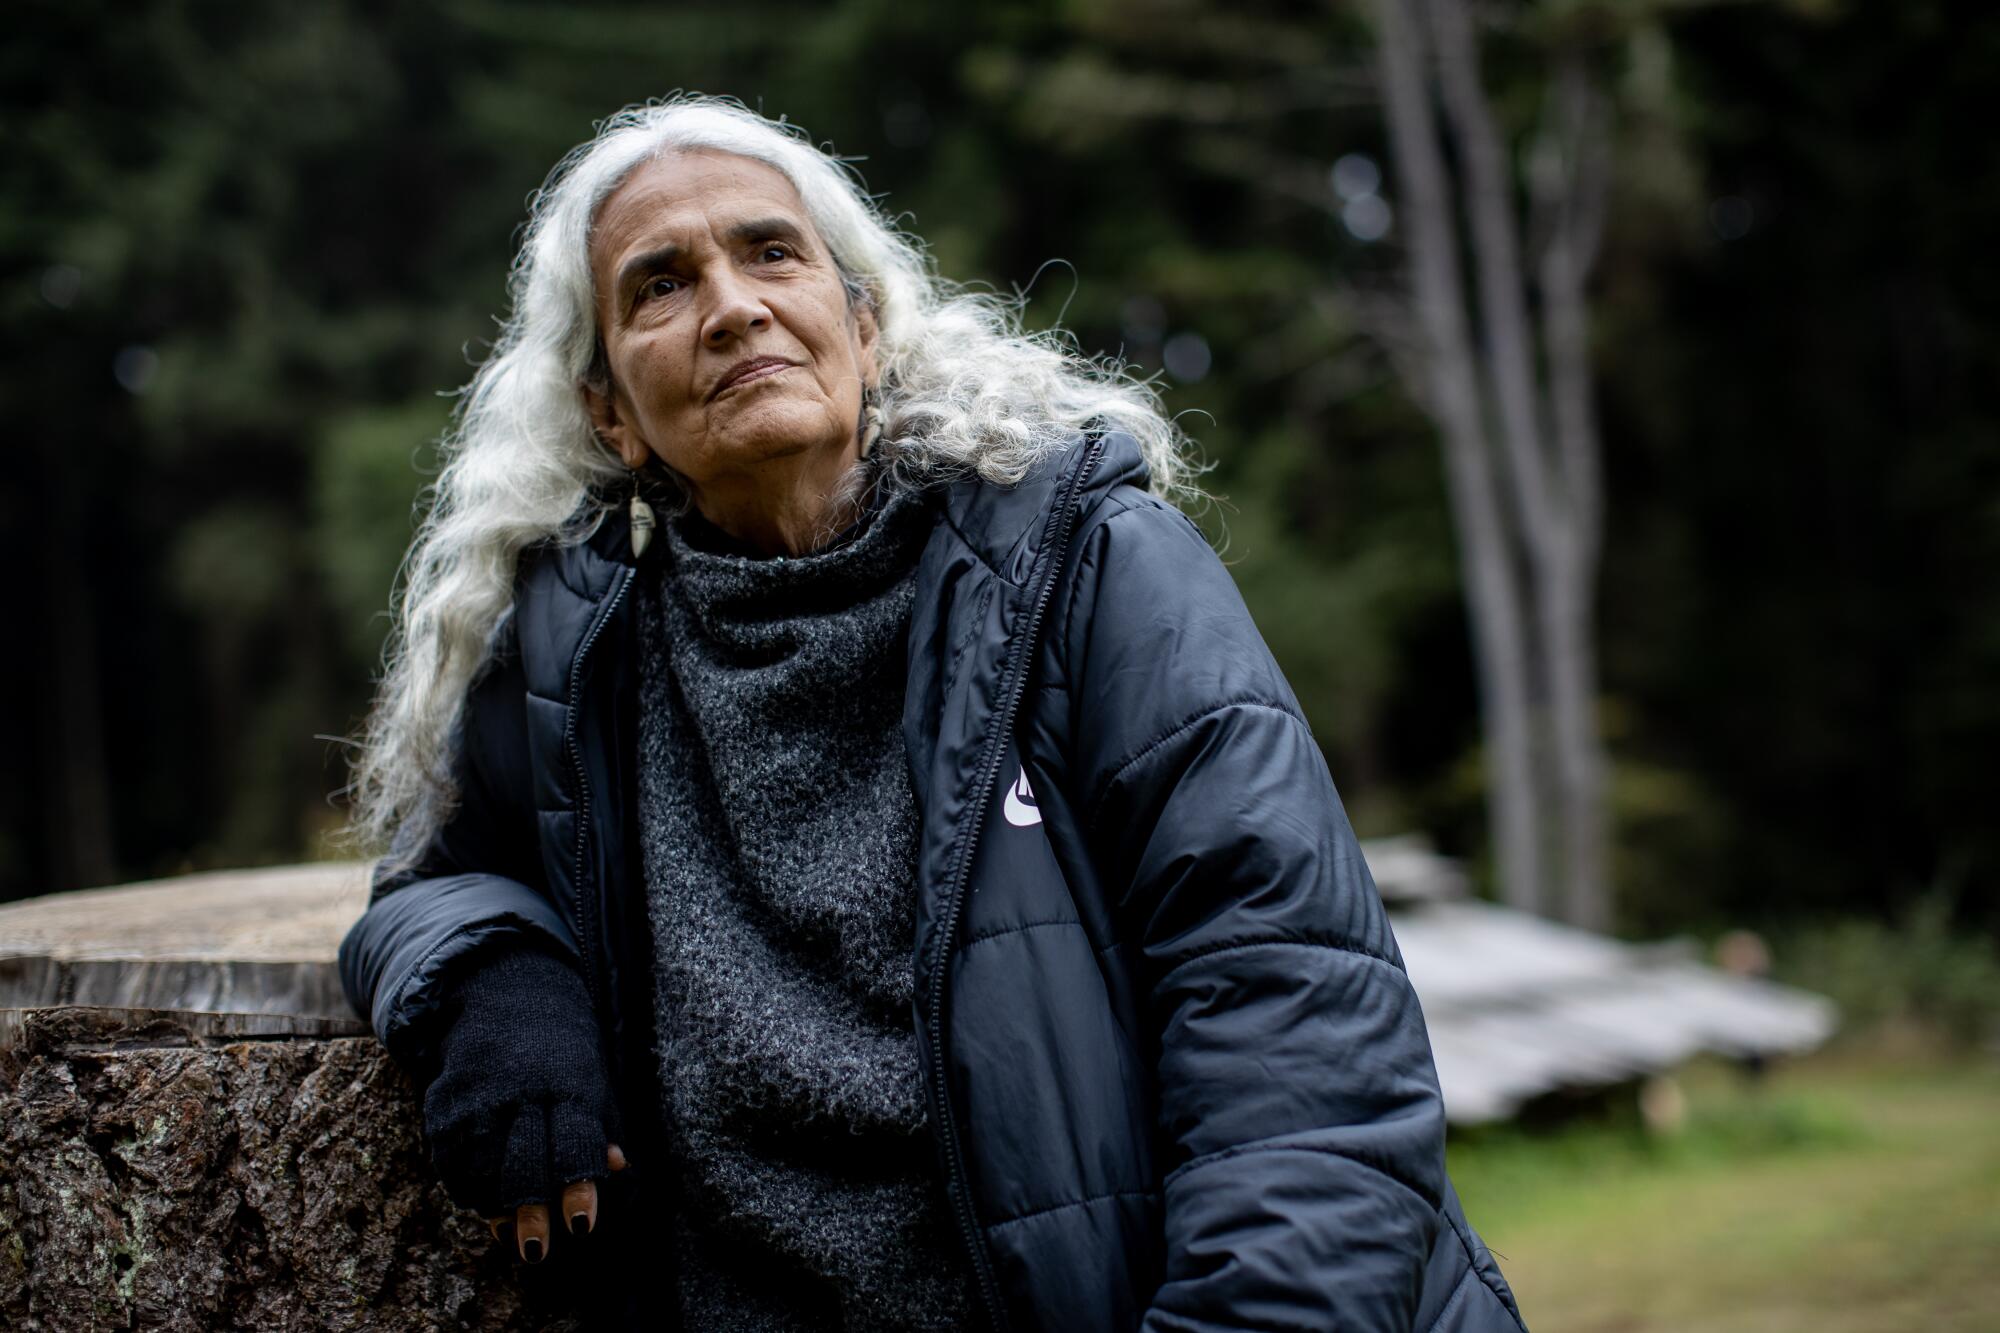 Yurok Chief Judge Abby Abinanti leans against a tree stump